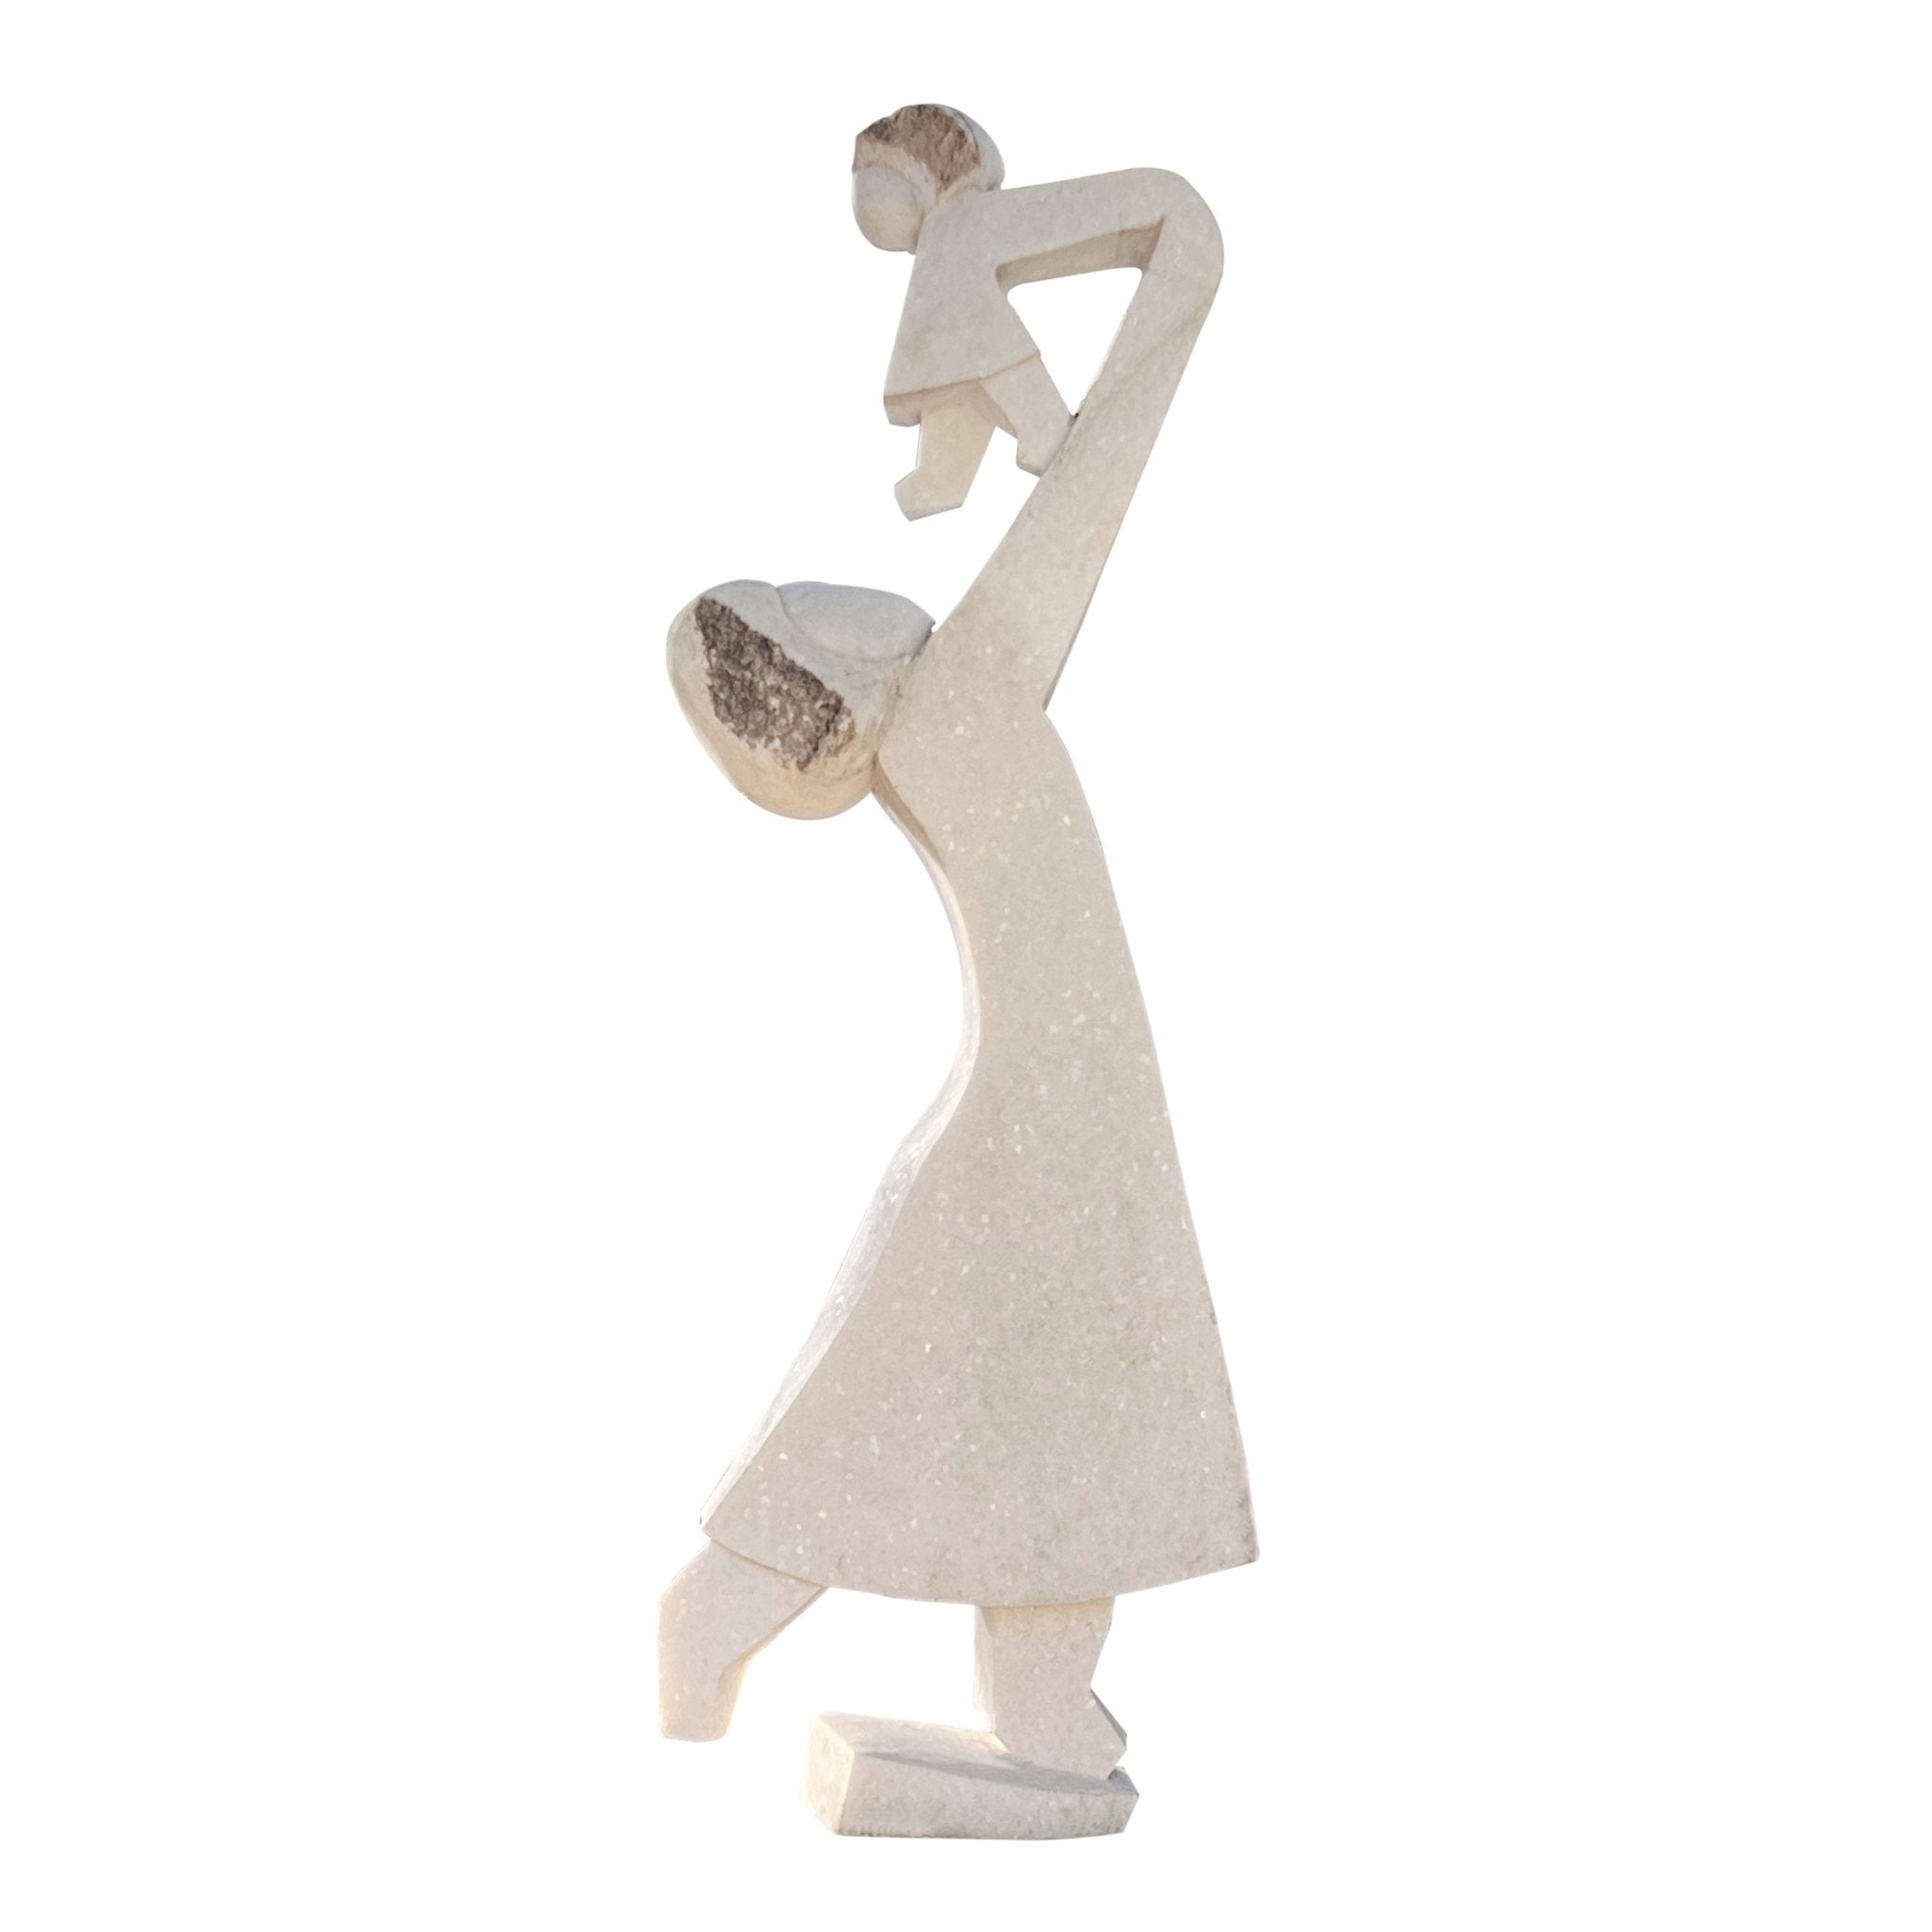 Dominic Benhura - Joyous Moments - Shona-Art Shop - Kunst Skulptur aus Stein, dekorativ für den Aussenbereich und Interior